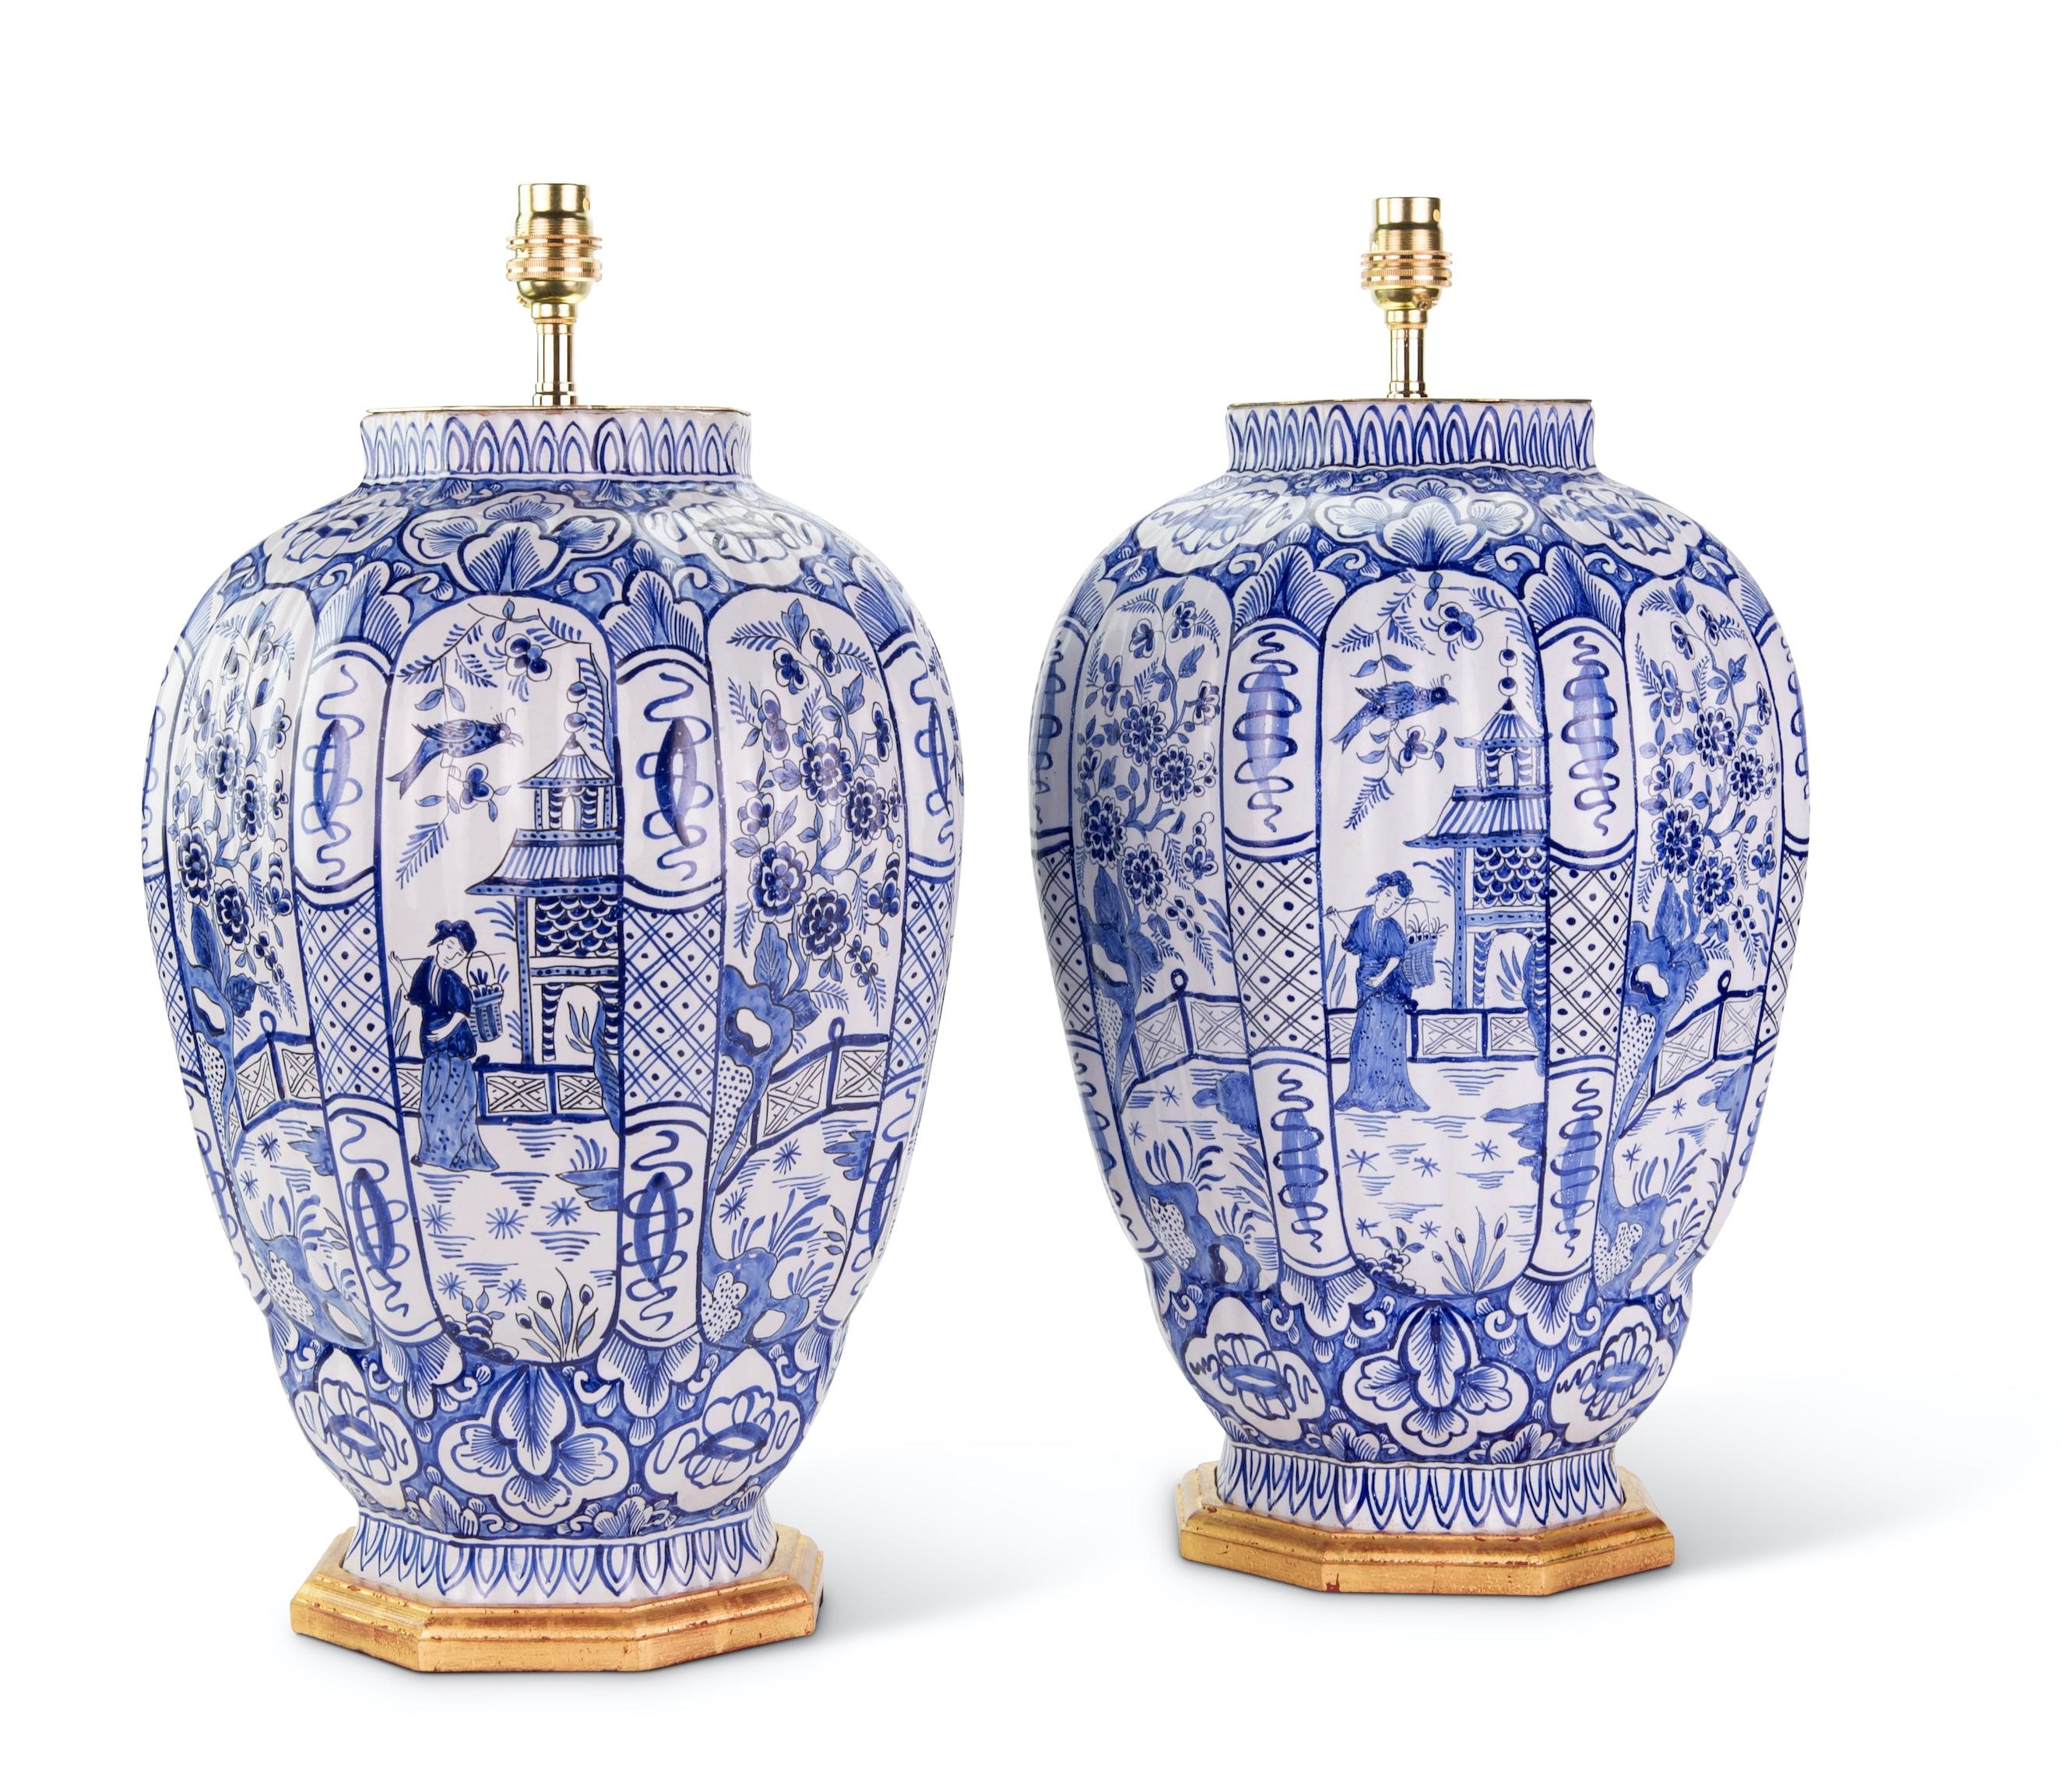 Paire de grands vases hollandais en bleu et blanc de Delft, avec des corps octogonaux à godrons, décorés dans des tons de bleu sur fond blanc, avec des panneaux de figures de cour dans des scènes de jardin avec des pavillons et des oiseaux, avec